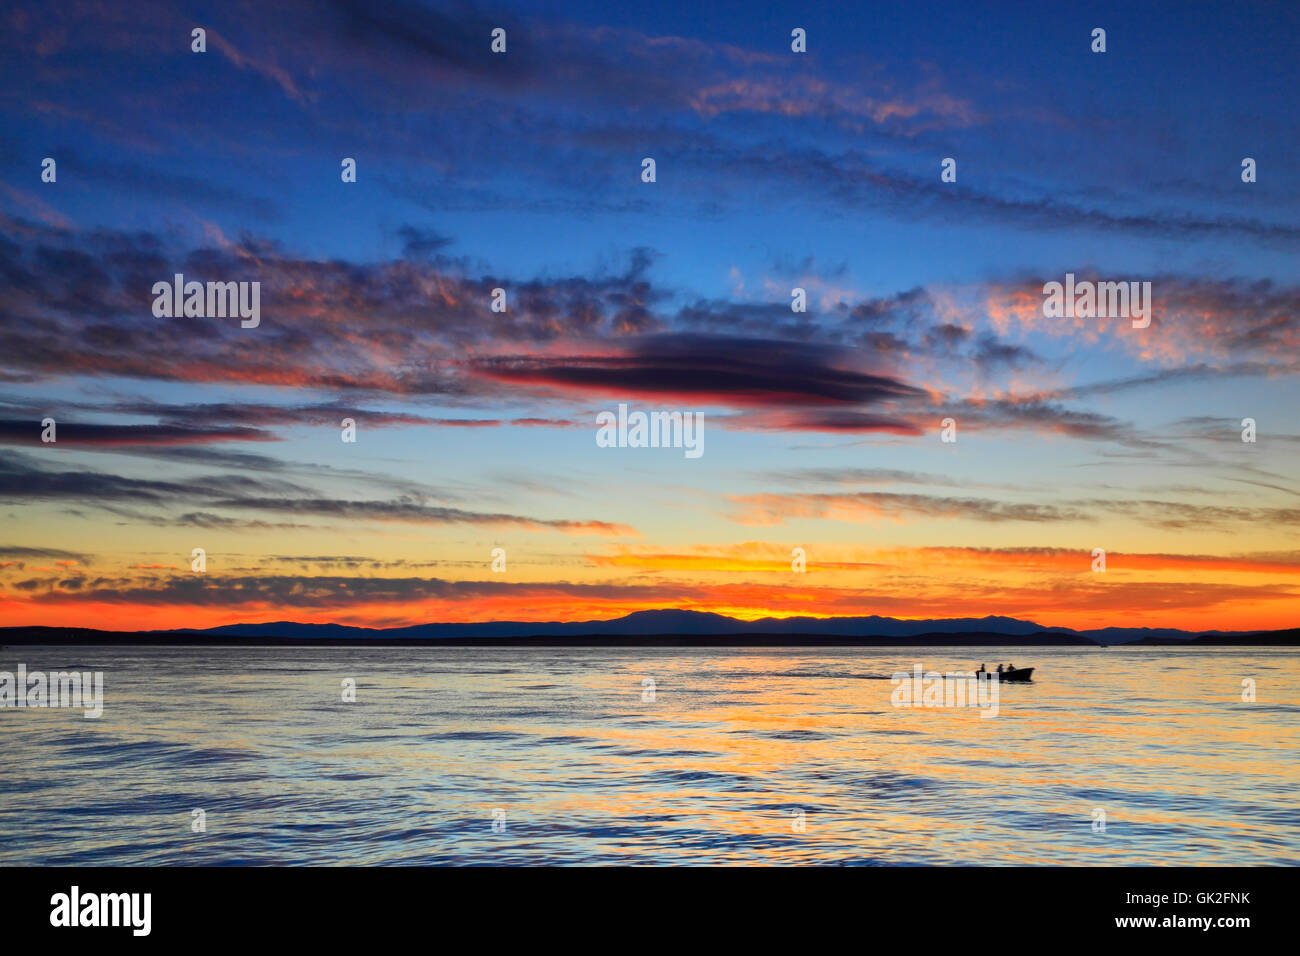 Colorful cloudy sunset on the sea. North Croatia coast Stock Photo